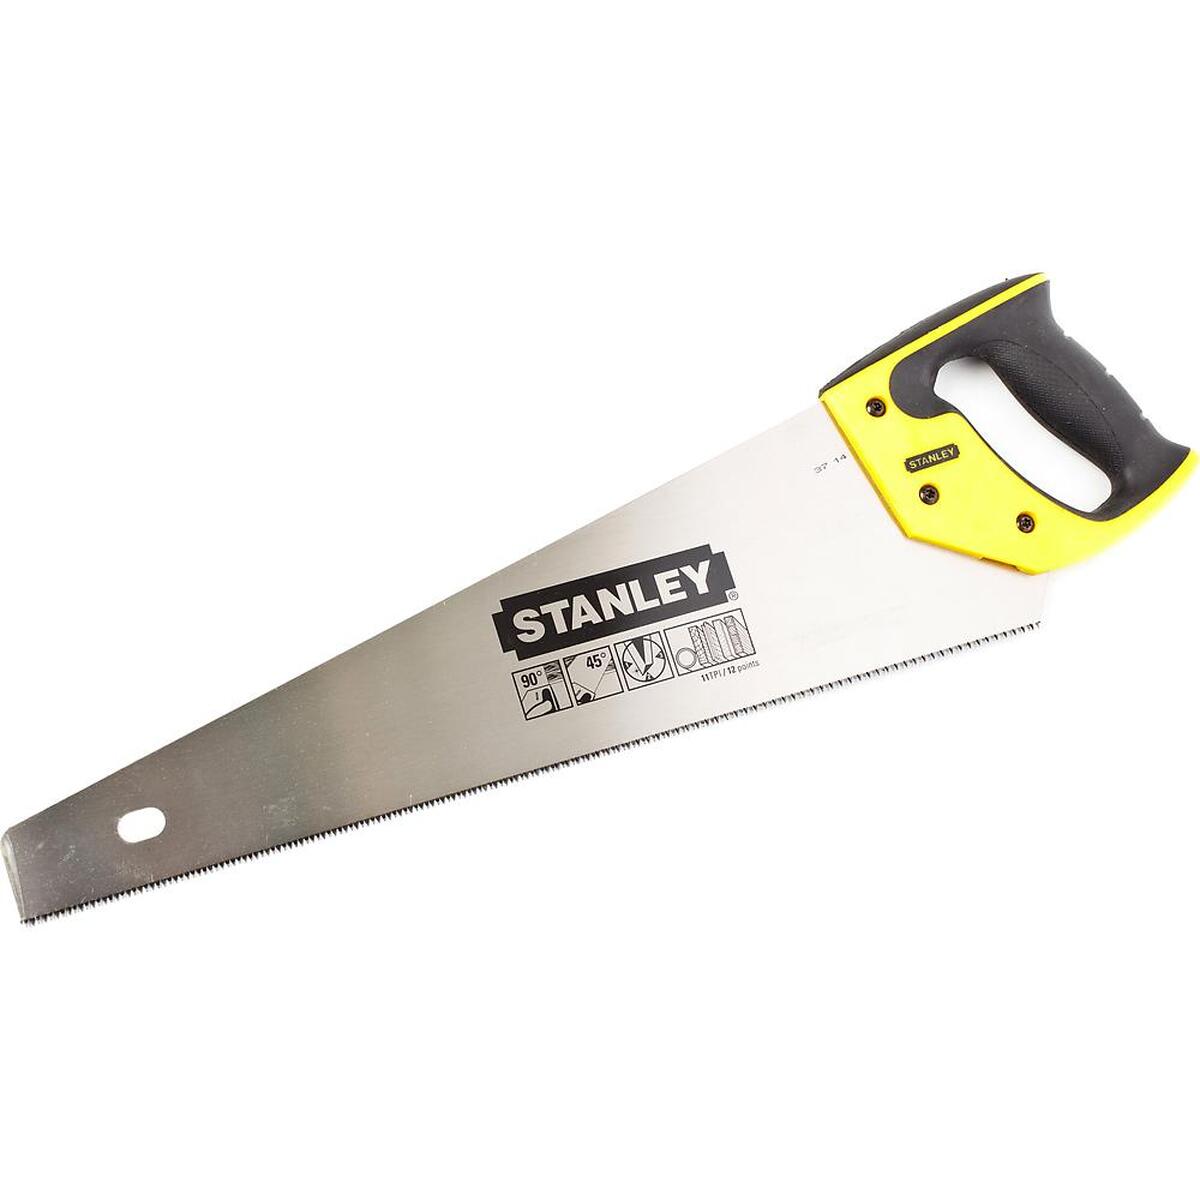 Ножовка по дереву STANLEY Jet-cut TPI11 450мм 2-15-595 — Фото 1